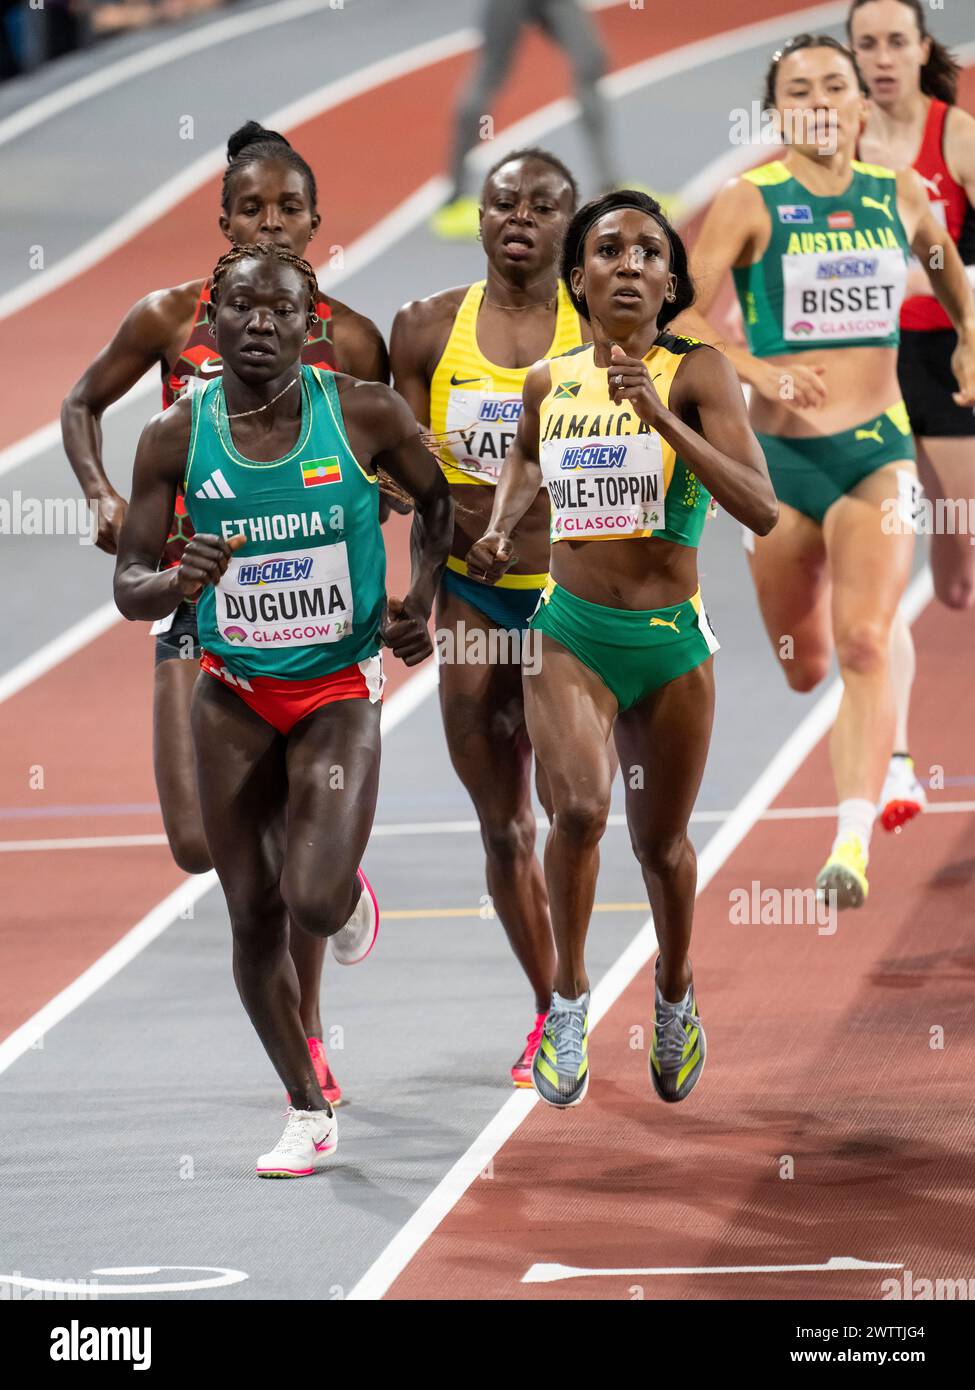 Tsige Duguma aus Äthiopien und Natoya Goule-Toppin aus Jamaika traten bei den 800-m-Läufen der Frauen bei den Leichtathletik-Hallenweltmeisterschaften in Emirates an Stockfoto